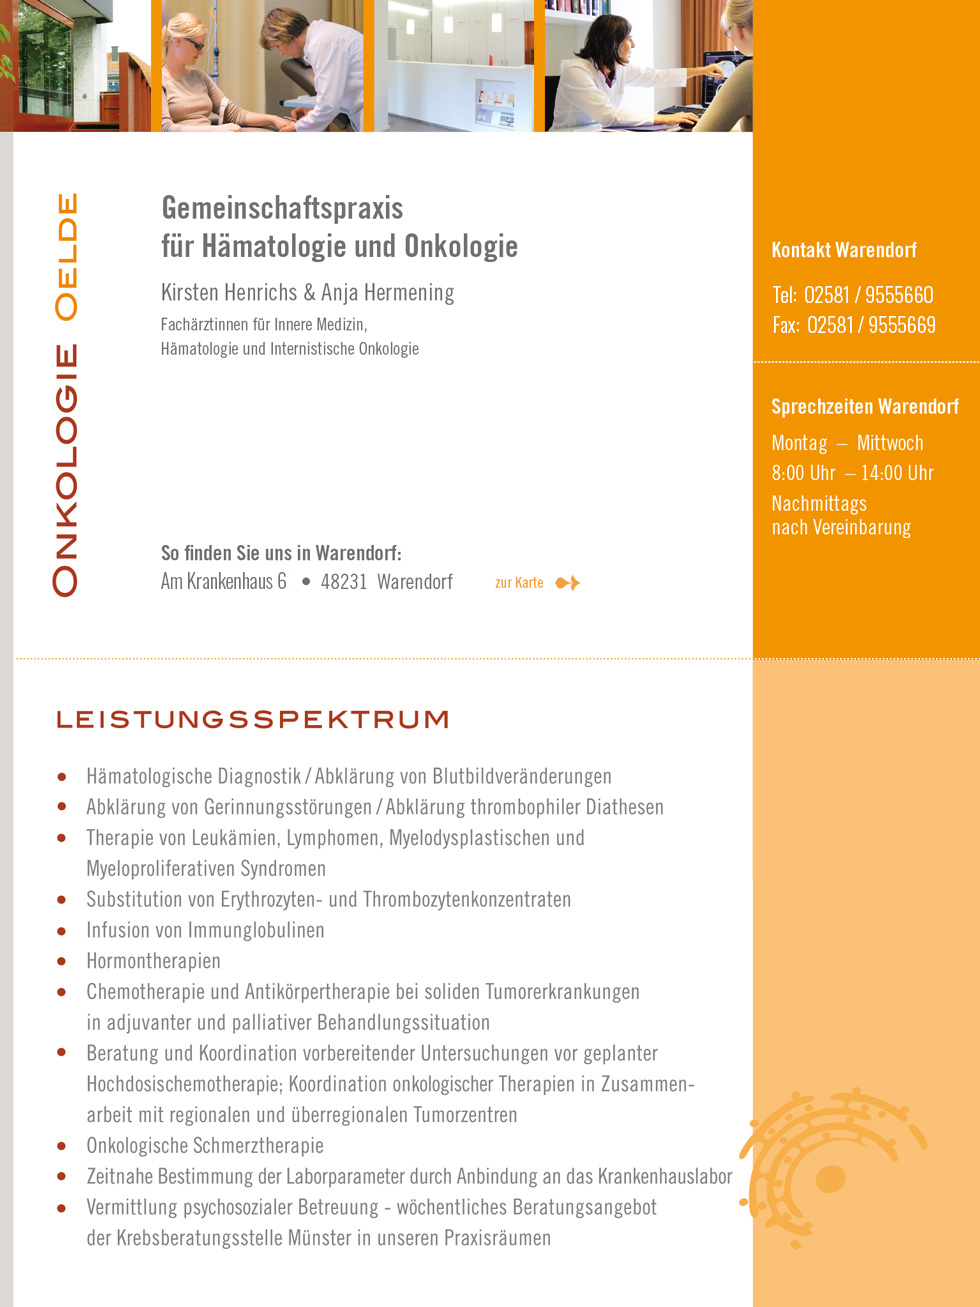 Gemeinschaftspraxis Henrichs Hermening | Onkologie Oelde